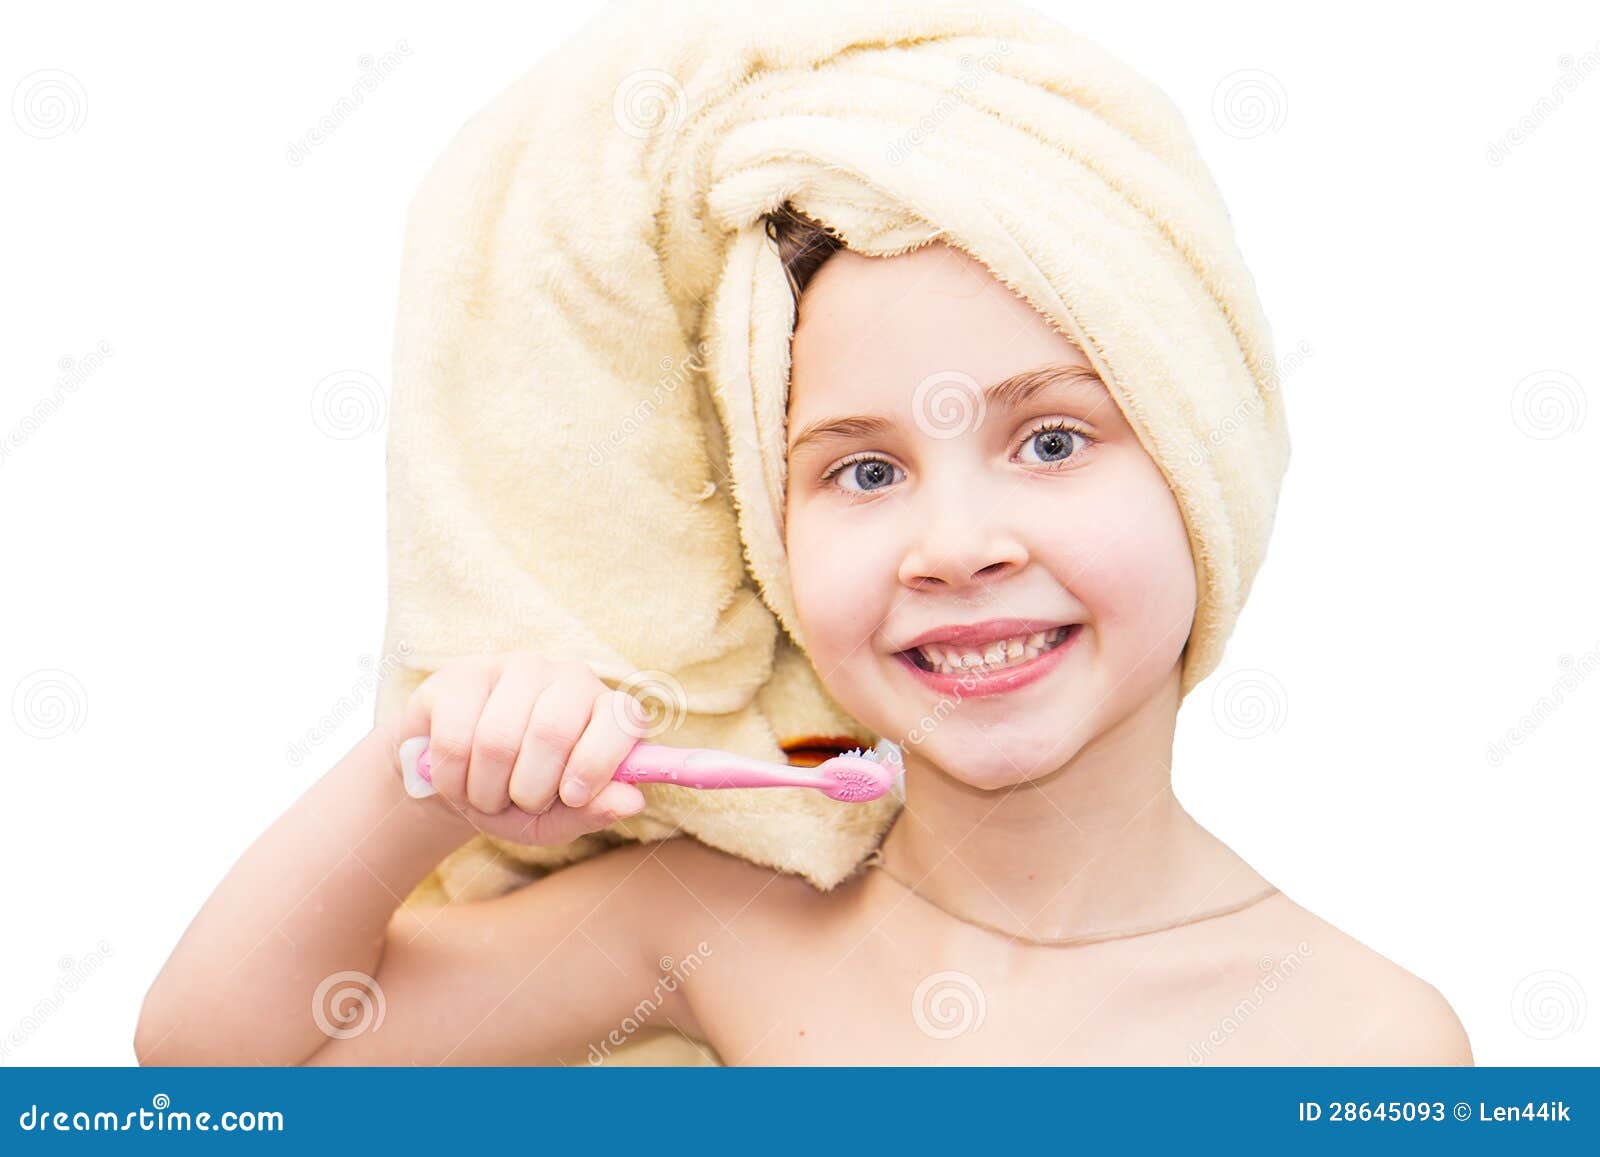 Сестра после ванны. Маленькая девочка после ванны. Маленькая девочка после ванной. Маленькие девочки после ванны в халате.